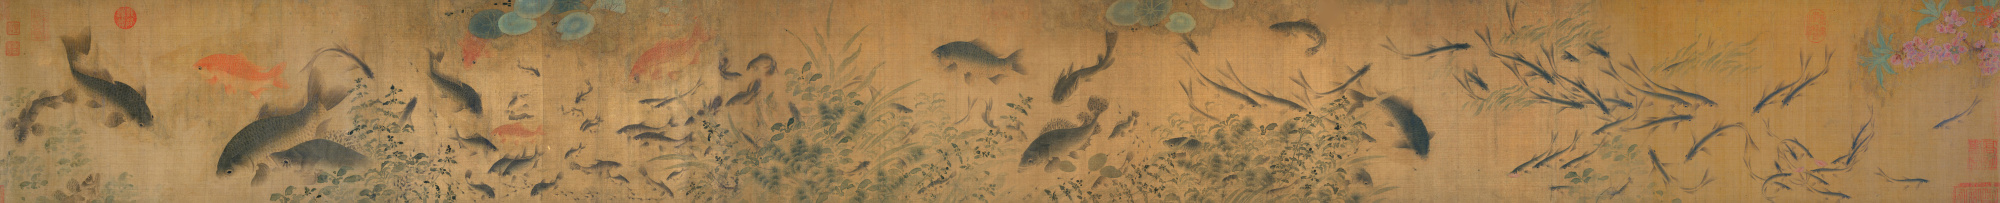 北宋 刘寀 群鱼戏瓣图卷26.8 x 252.2圣路易斯艺术馆